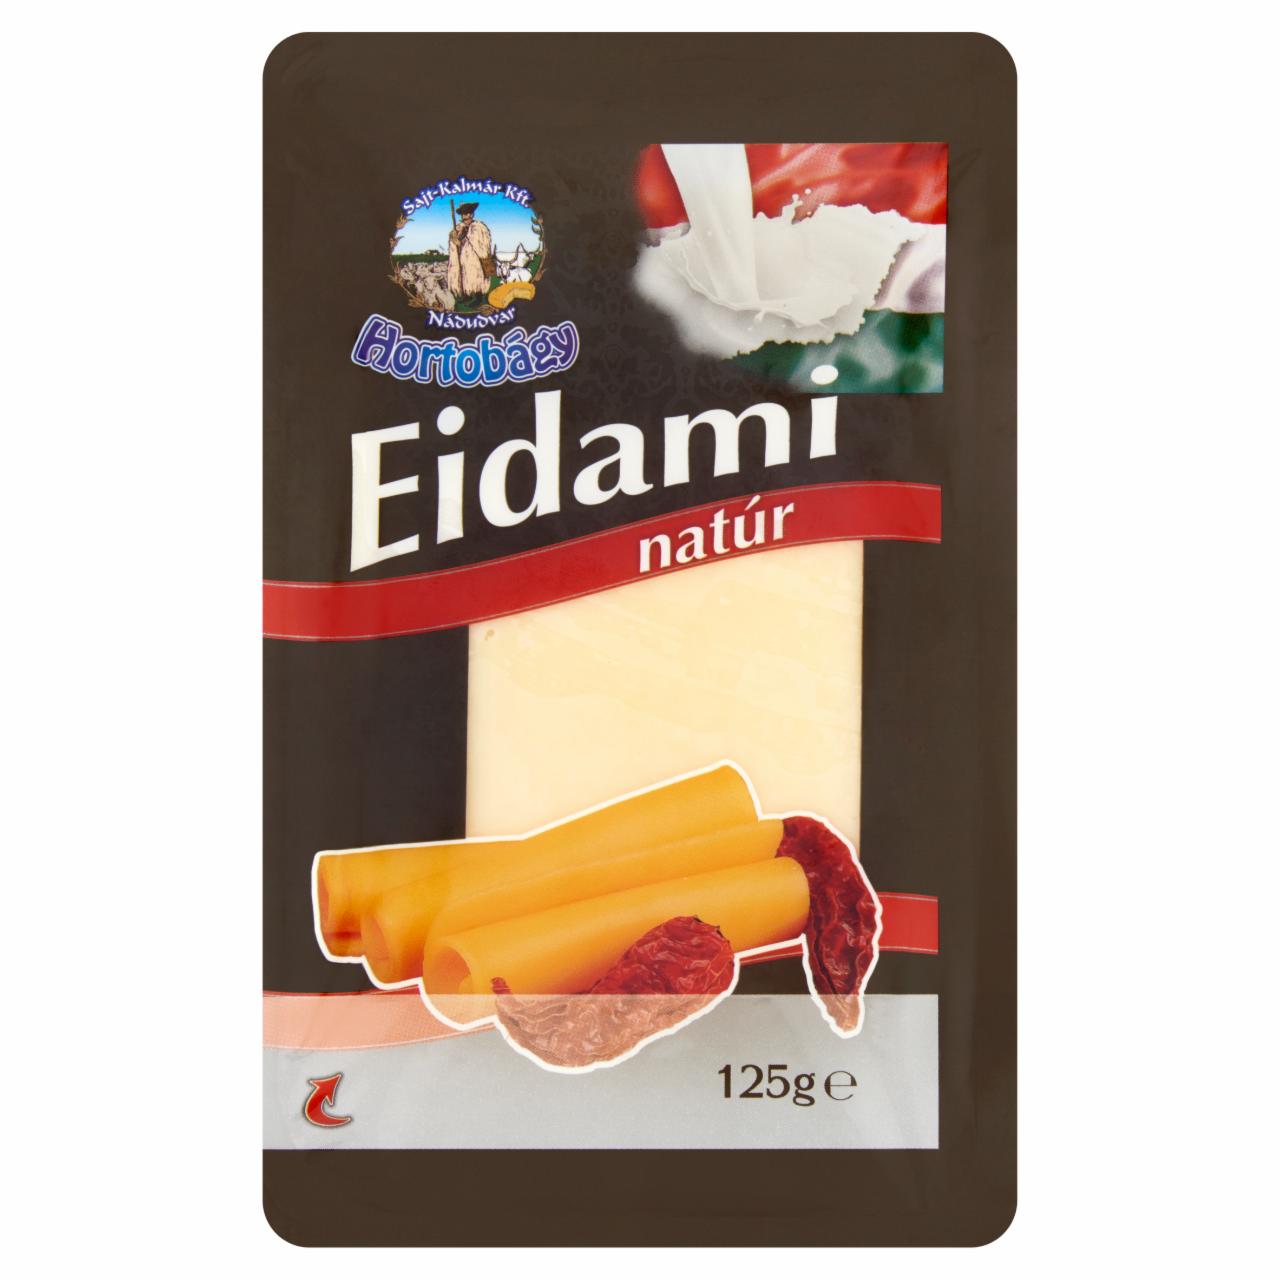 Képek - Hortobágy szeletelt natúr Eidami sajt 125 g